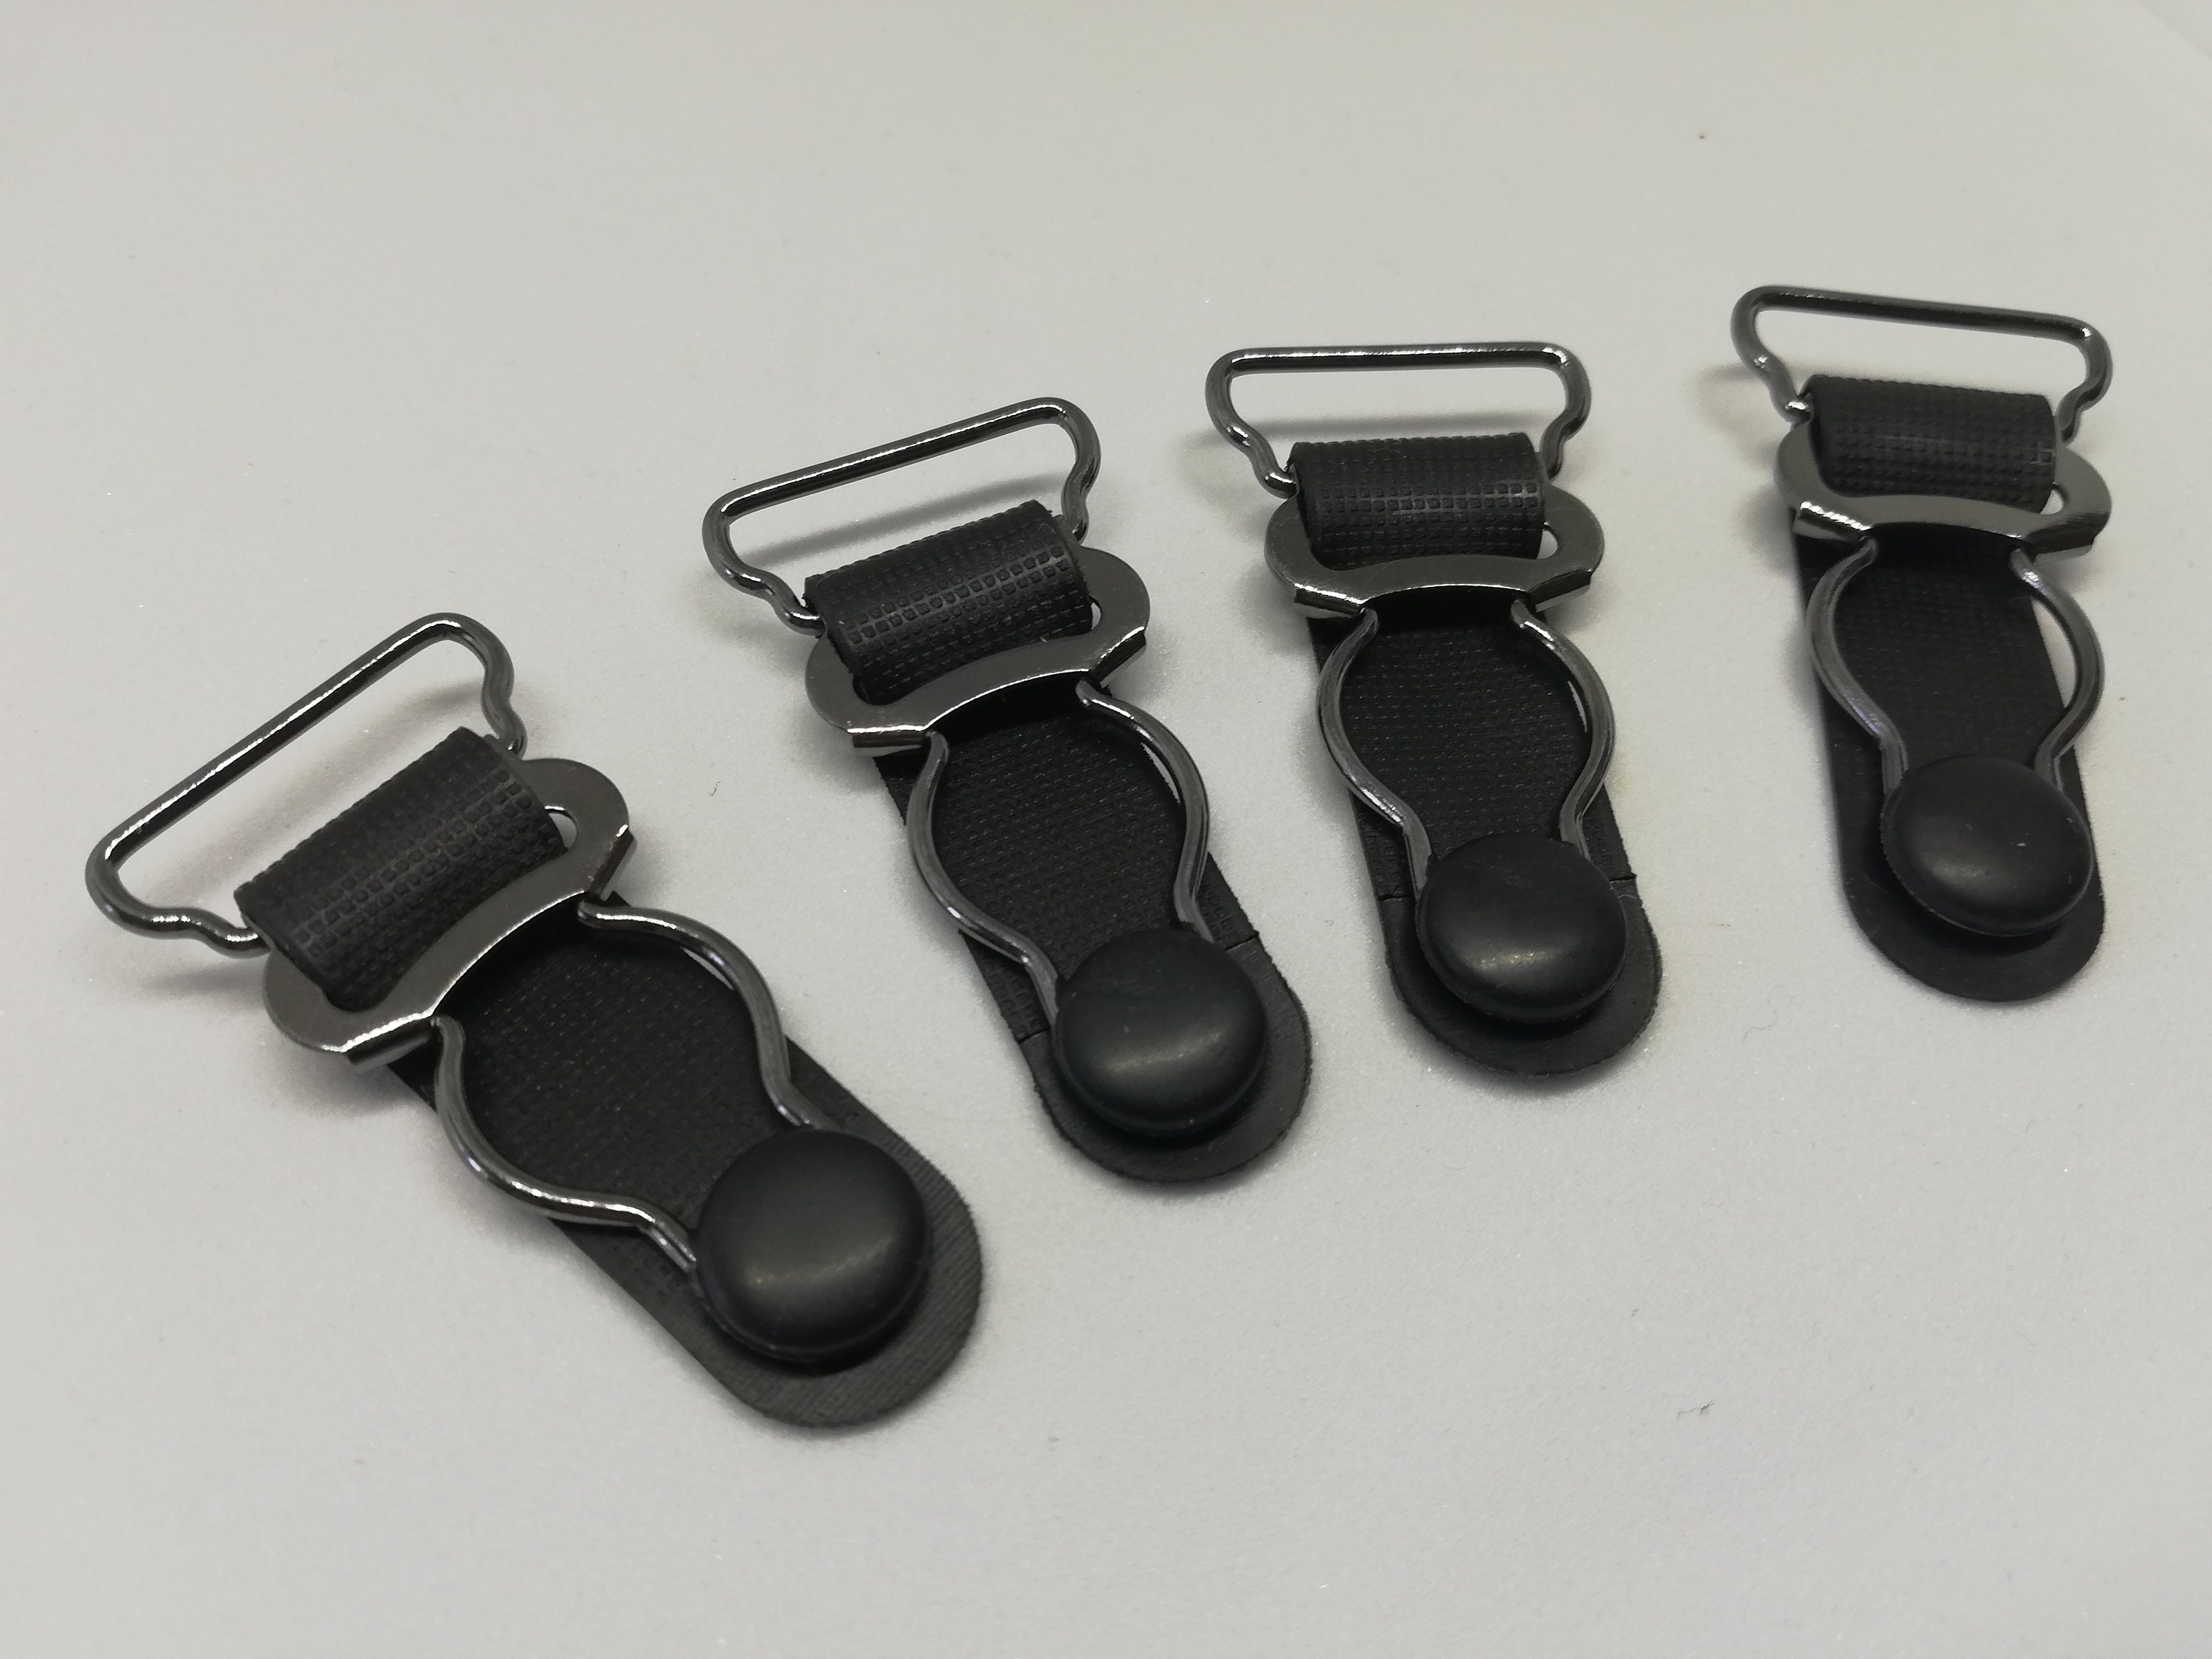 Suspender Plastic Clips Black, Plastic Stocking Grips